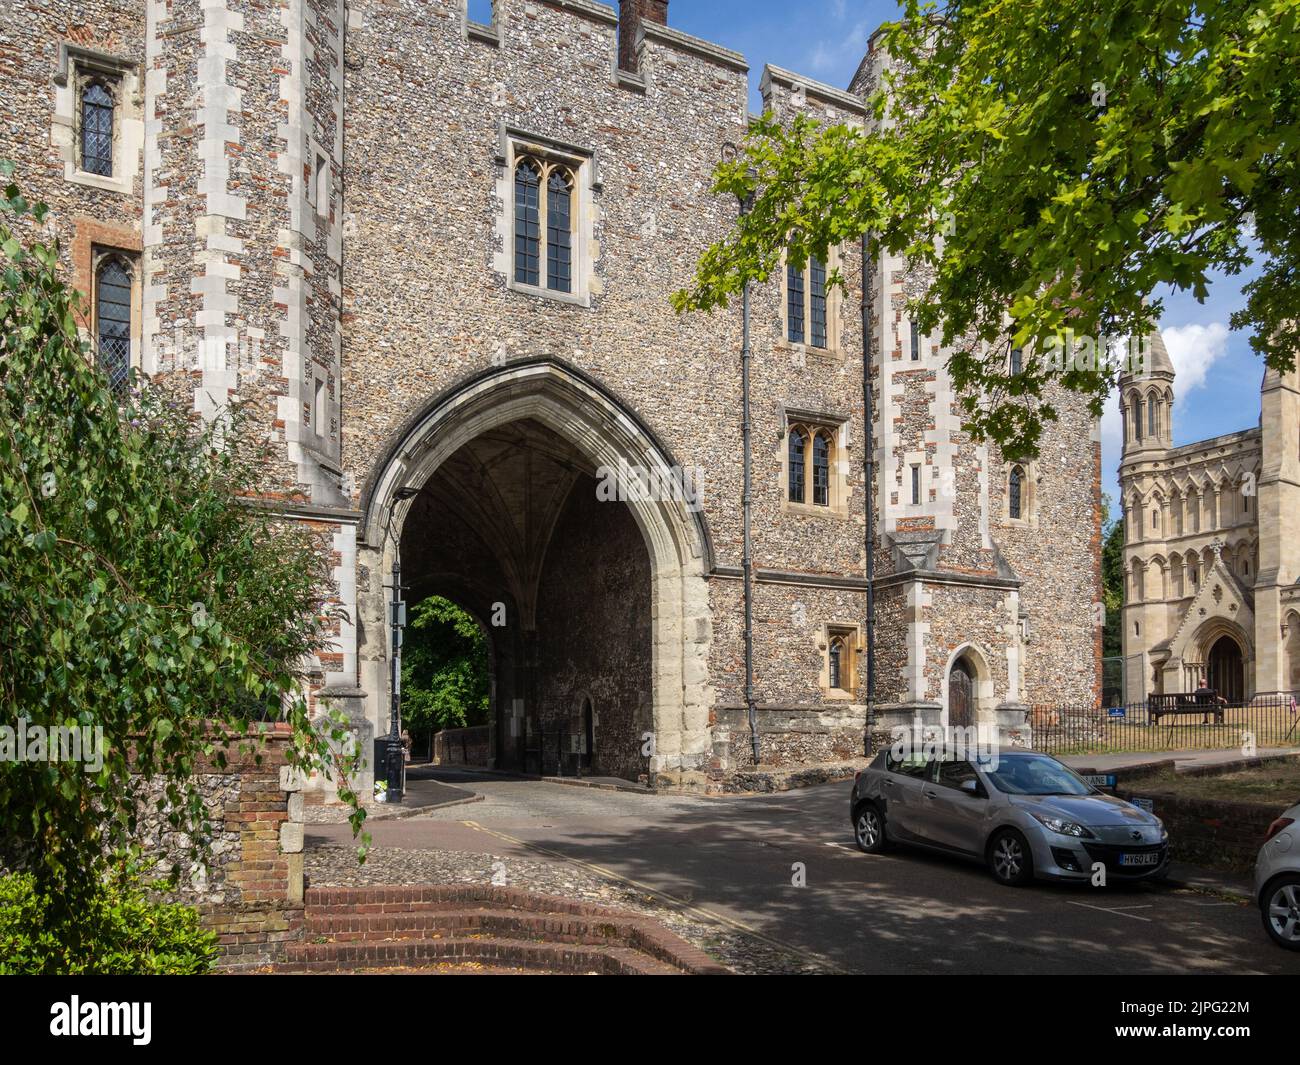 Abbey Gatehouse, à côté de la cathédrale St Albans, Hertfordshire, Royaume-Uni Banque D'Images